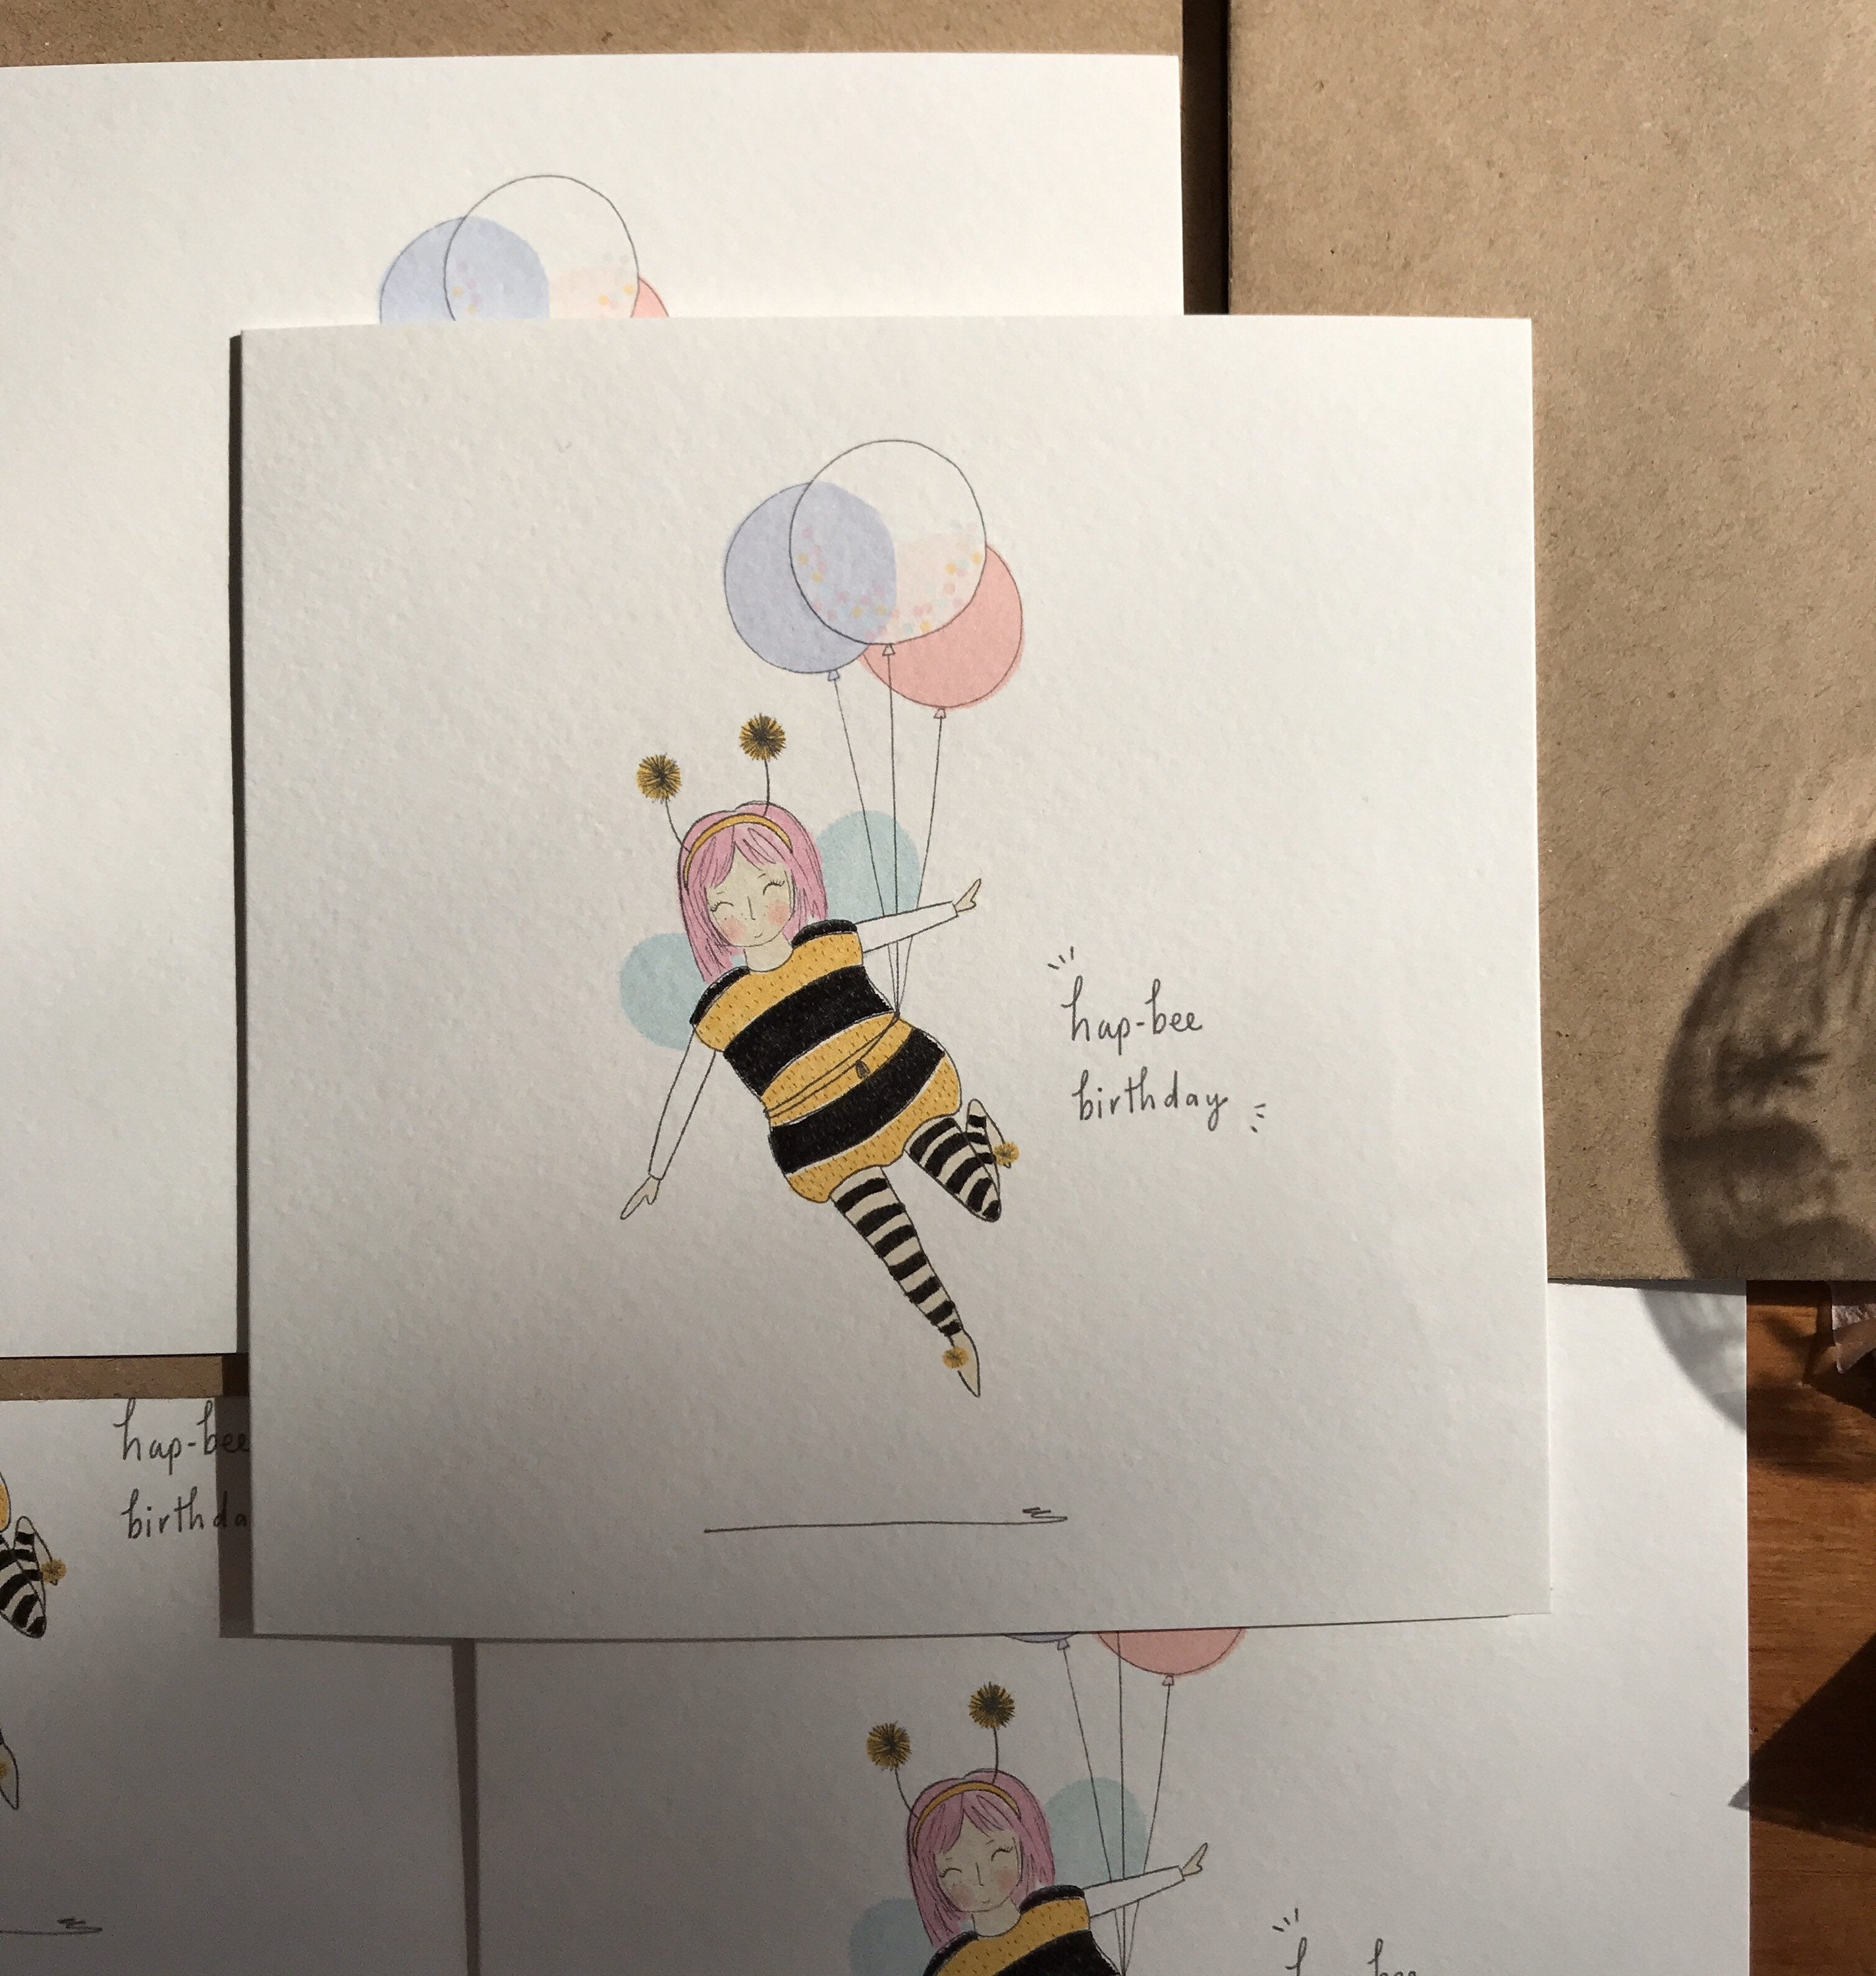 Hap-bee birthday!